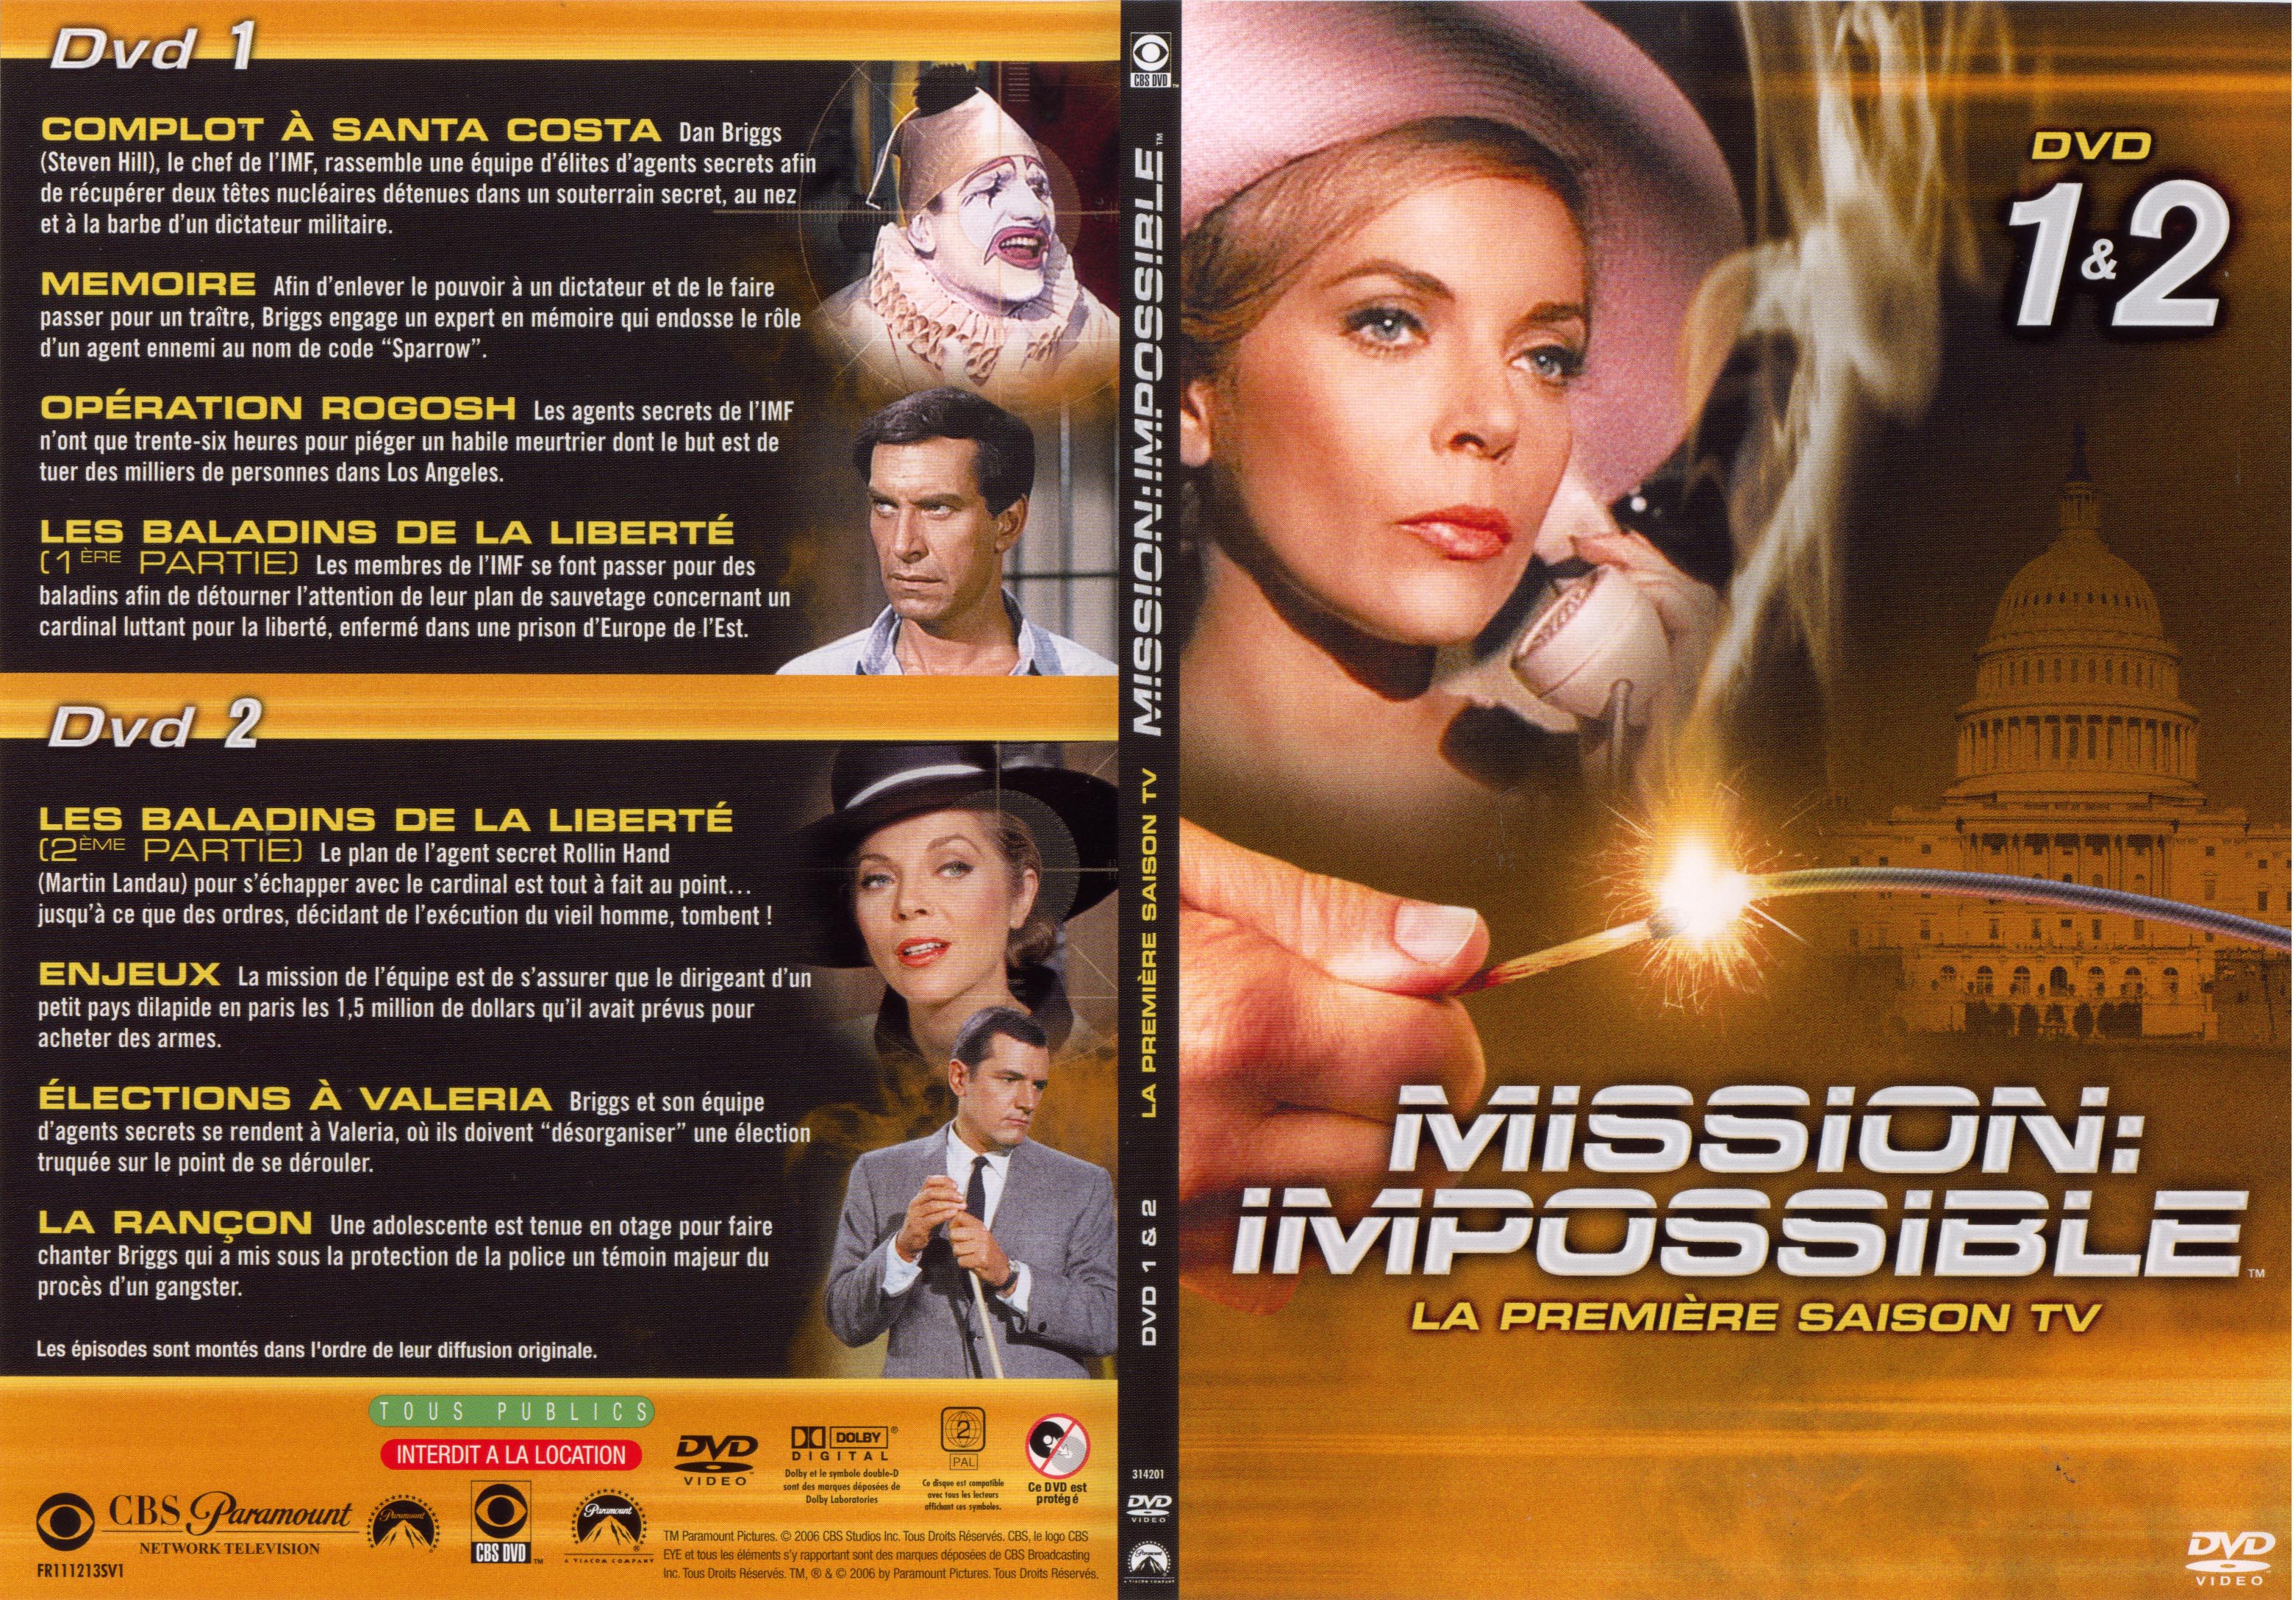 Jaquette DVD Mission impossible Saison 1 vol 1